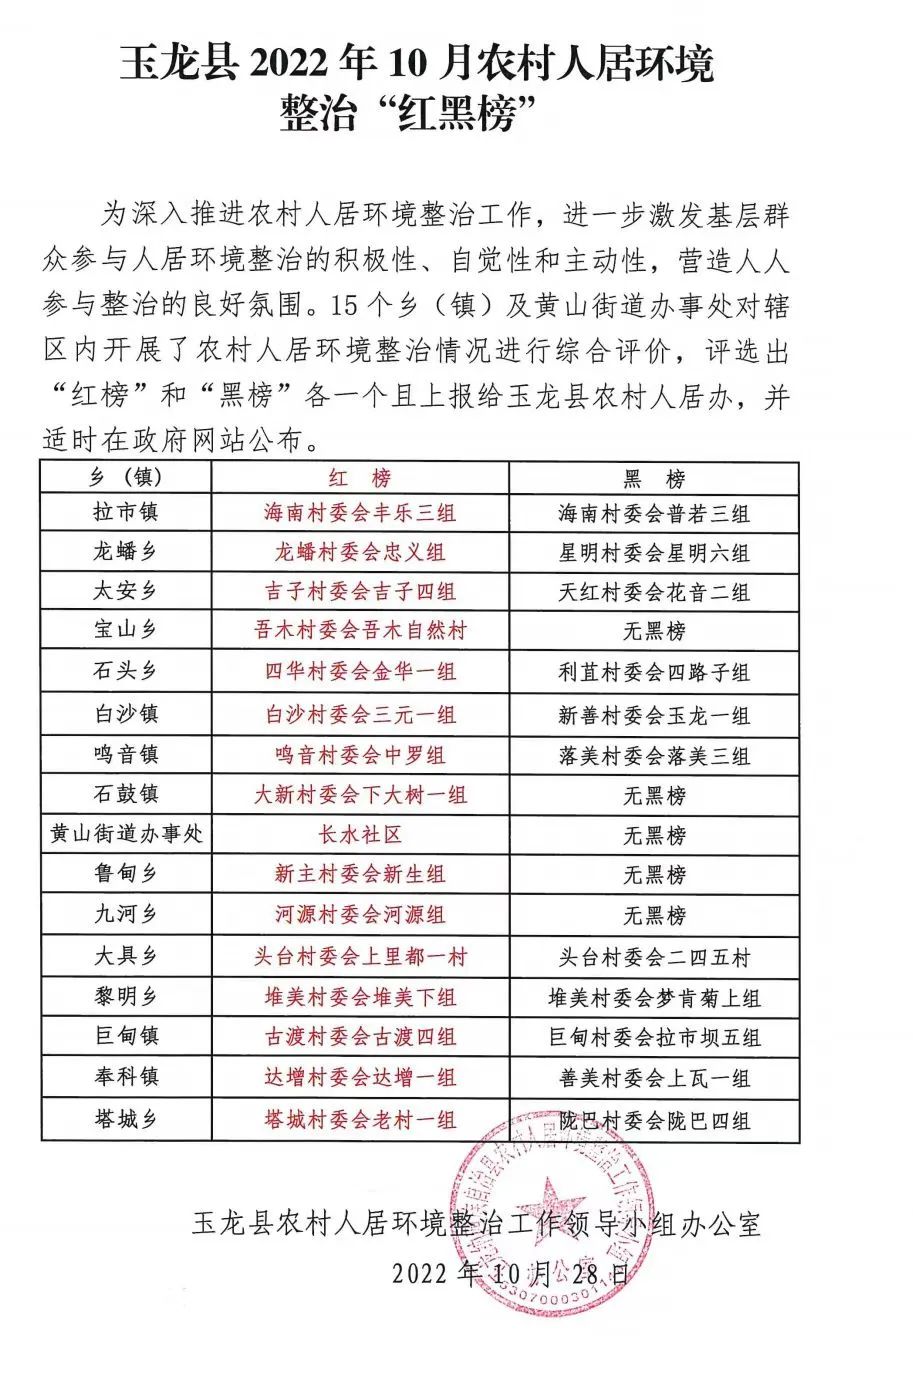 玉龙县发布10月农村人居环境整治“红黑榜”.jpg